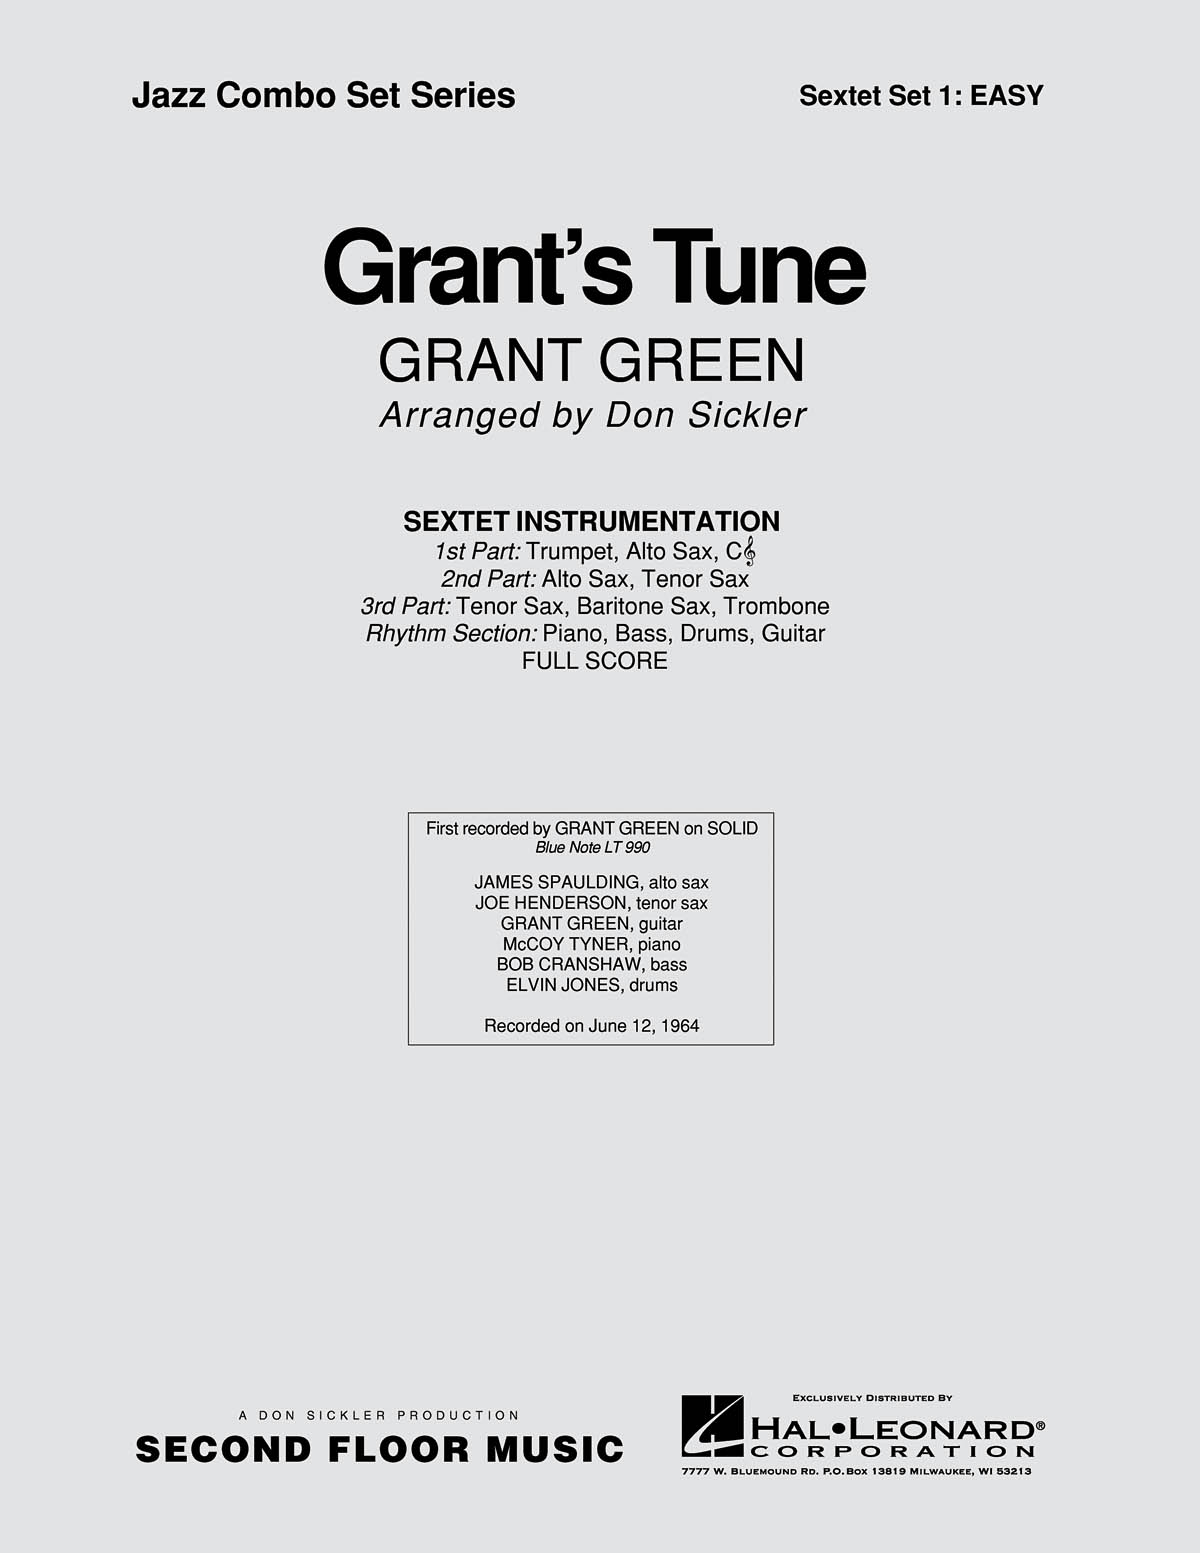 Grant’s Tune